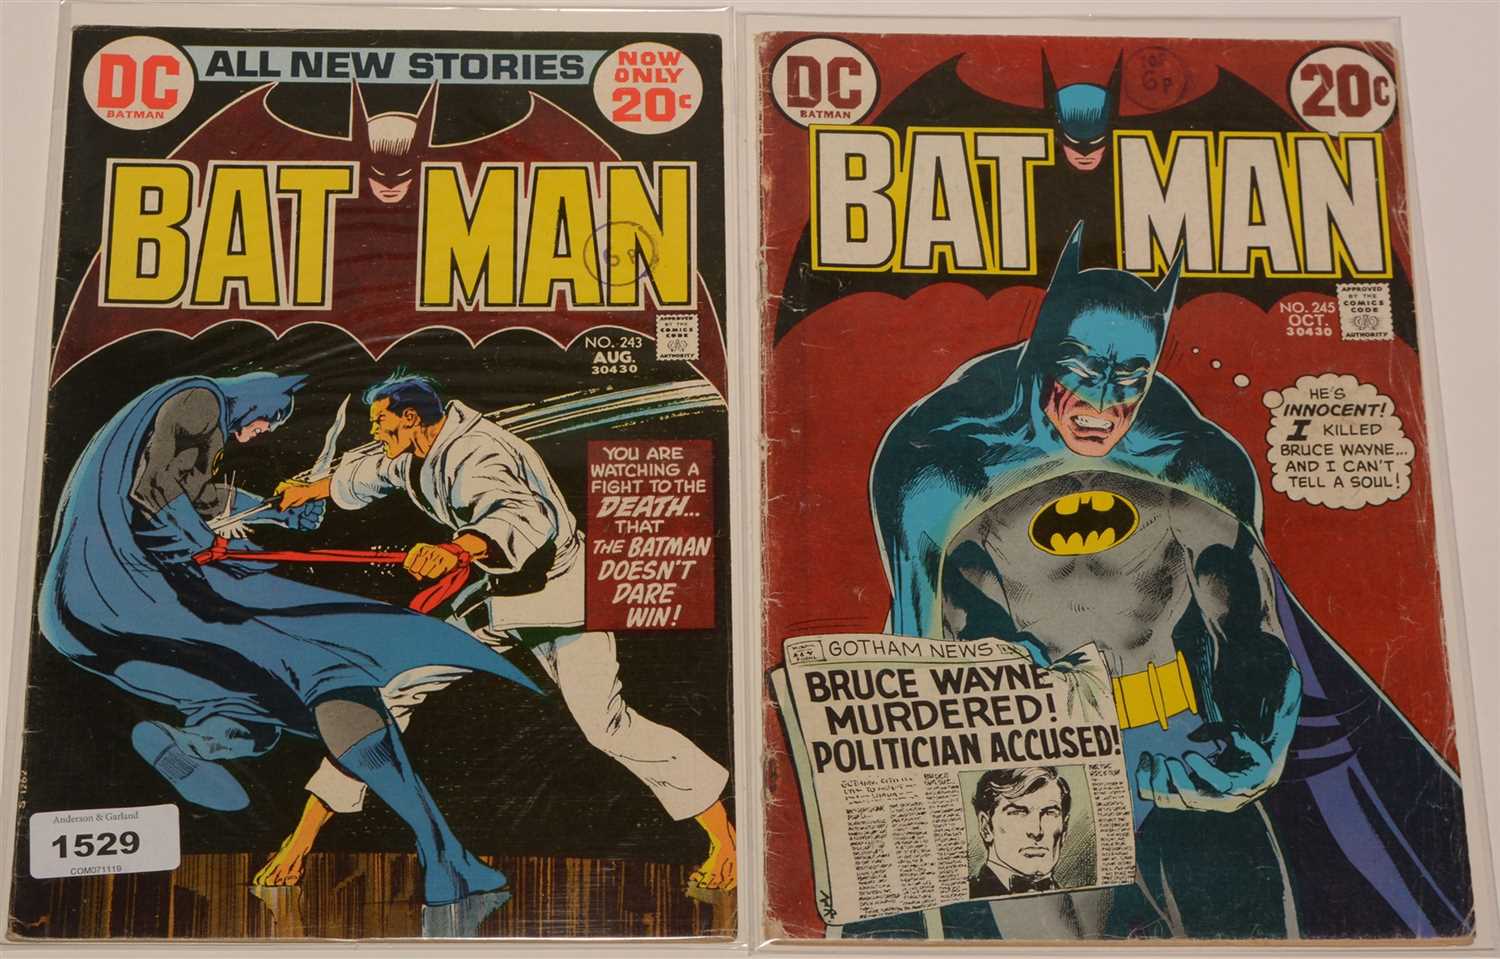 Lot 1529 - Batman No's. 243 and 245